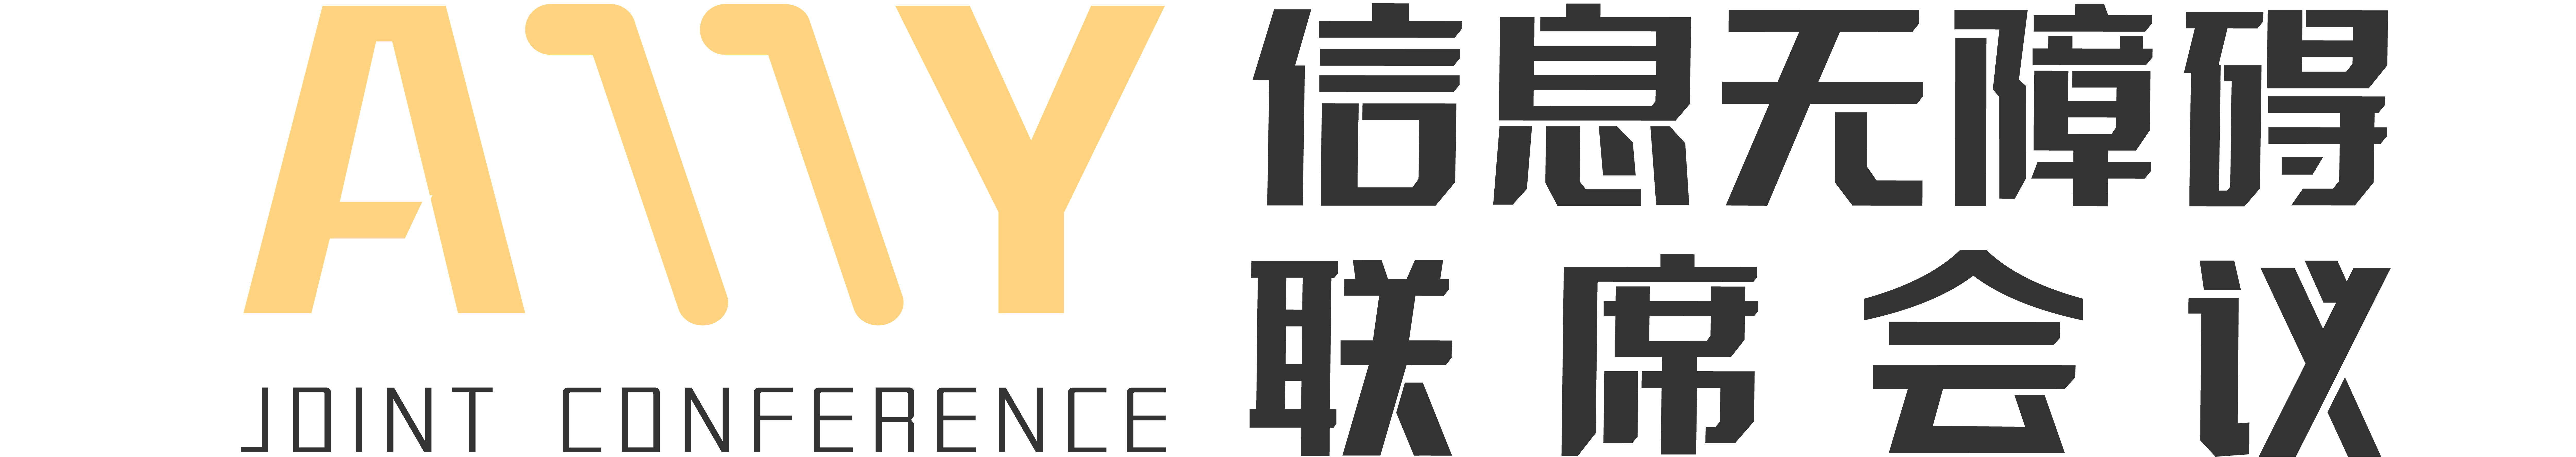 信息无障碍联席会议logo